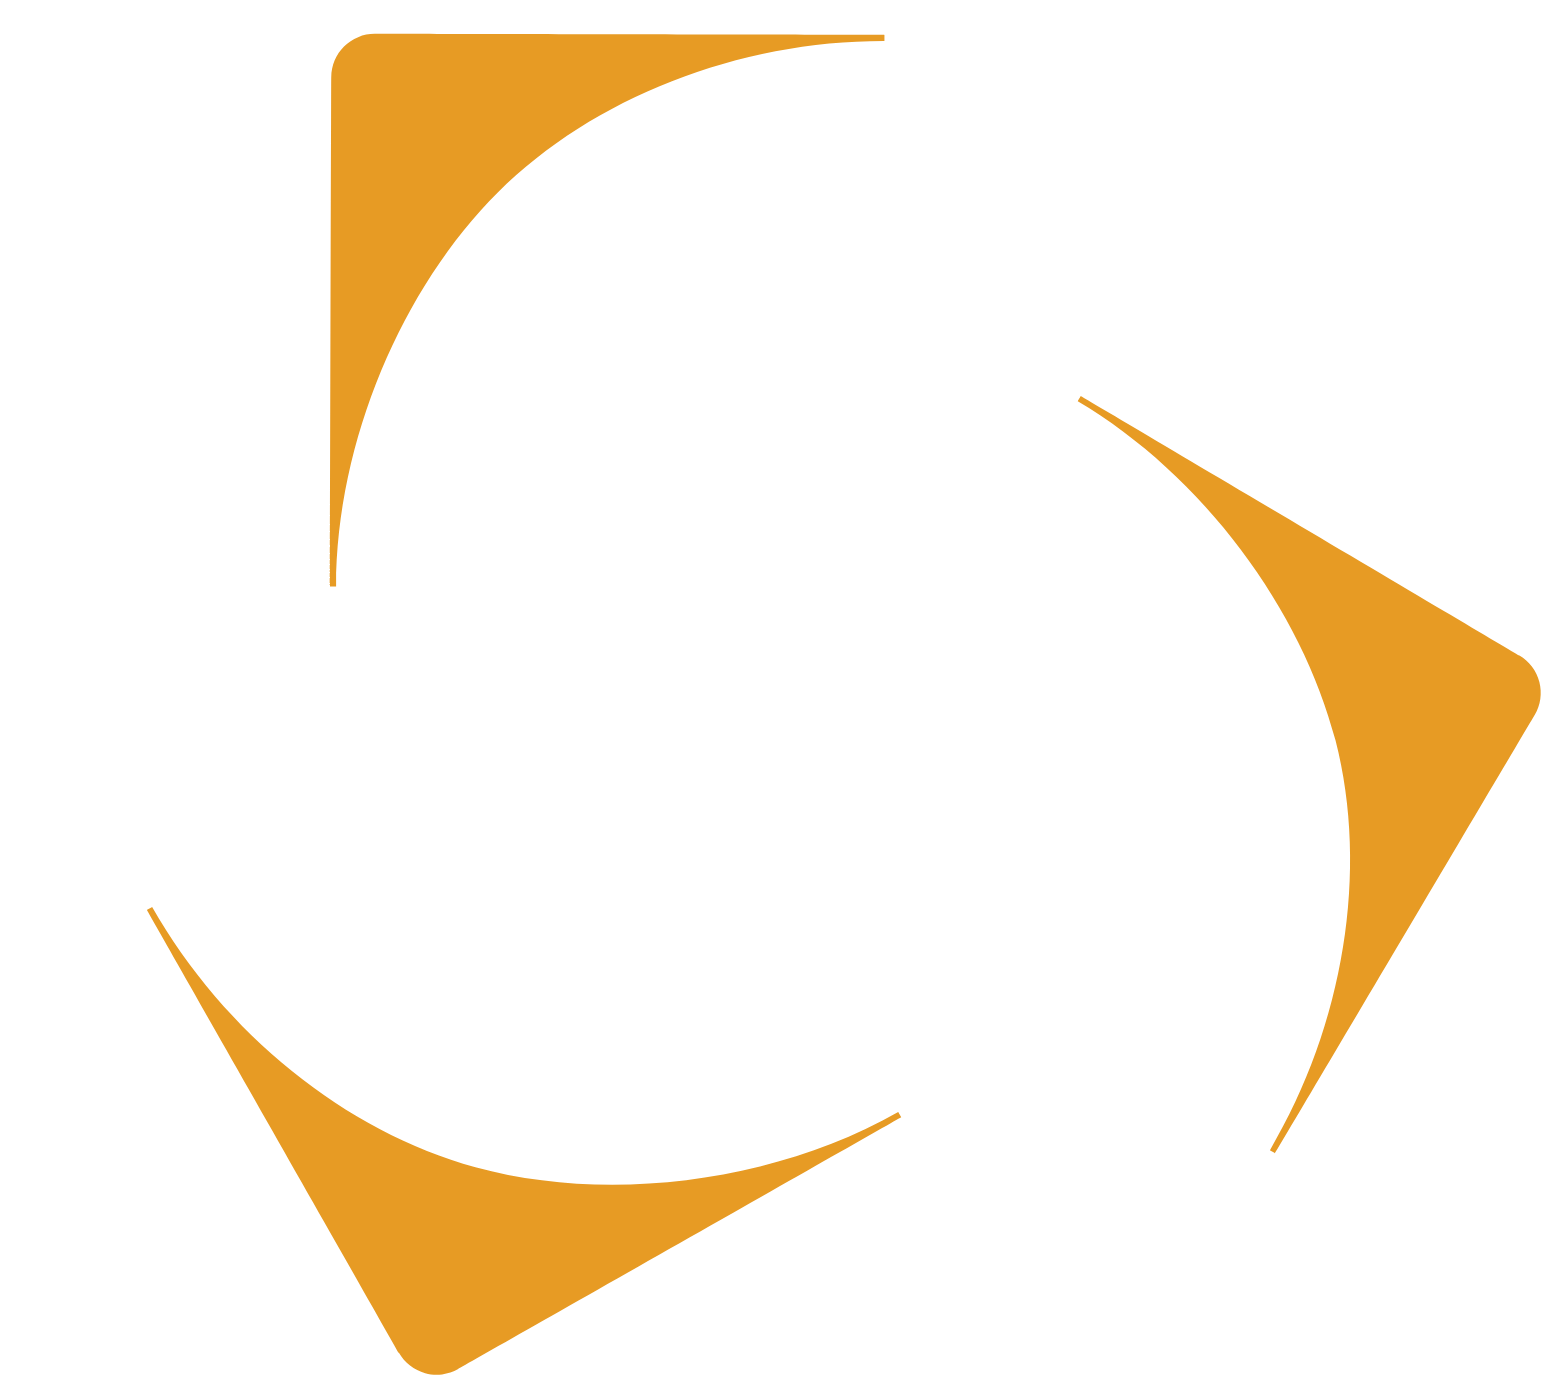 Kazatomprom logo for dark backgrounds (transparent PNG)